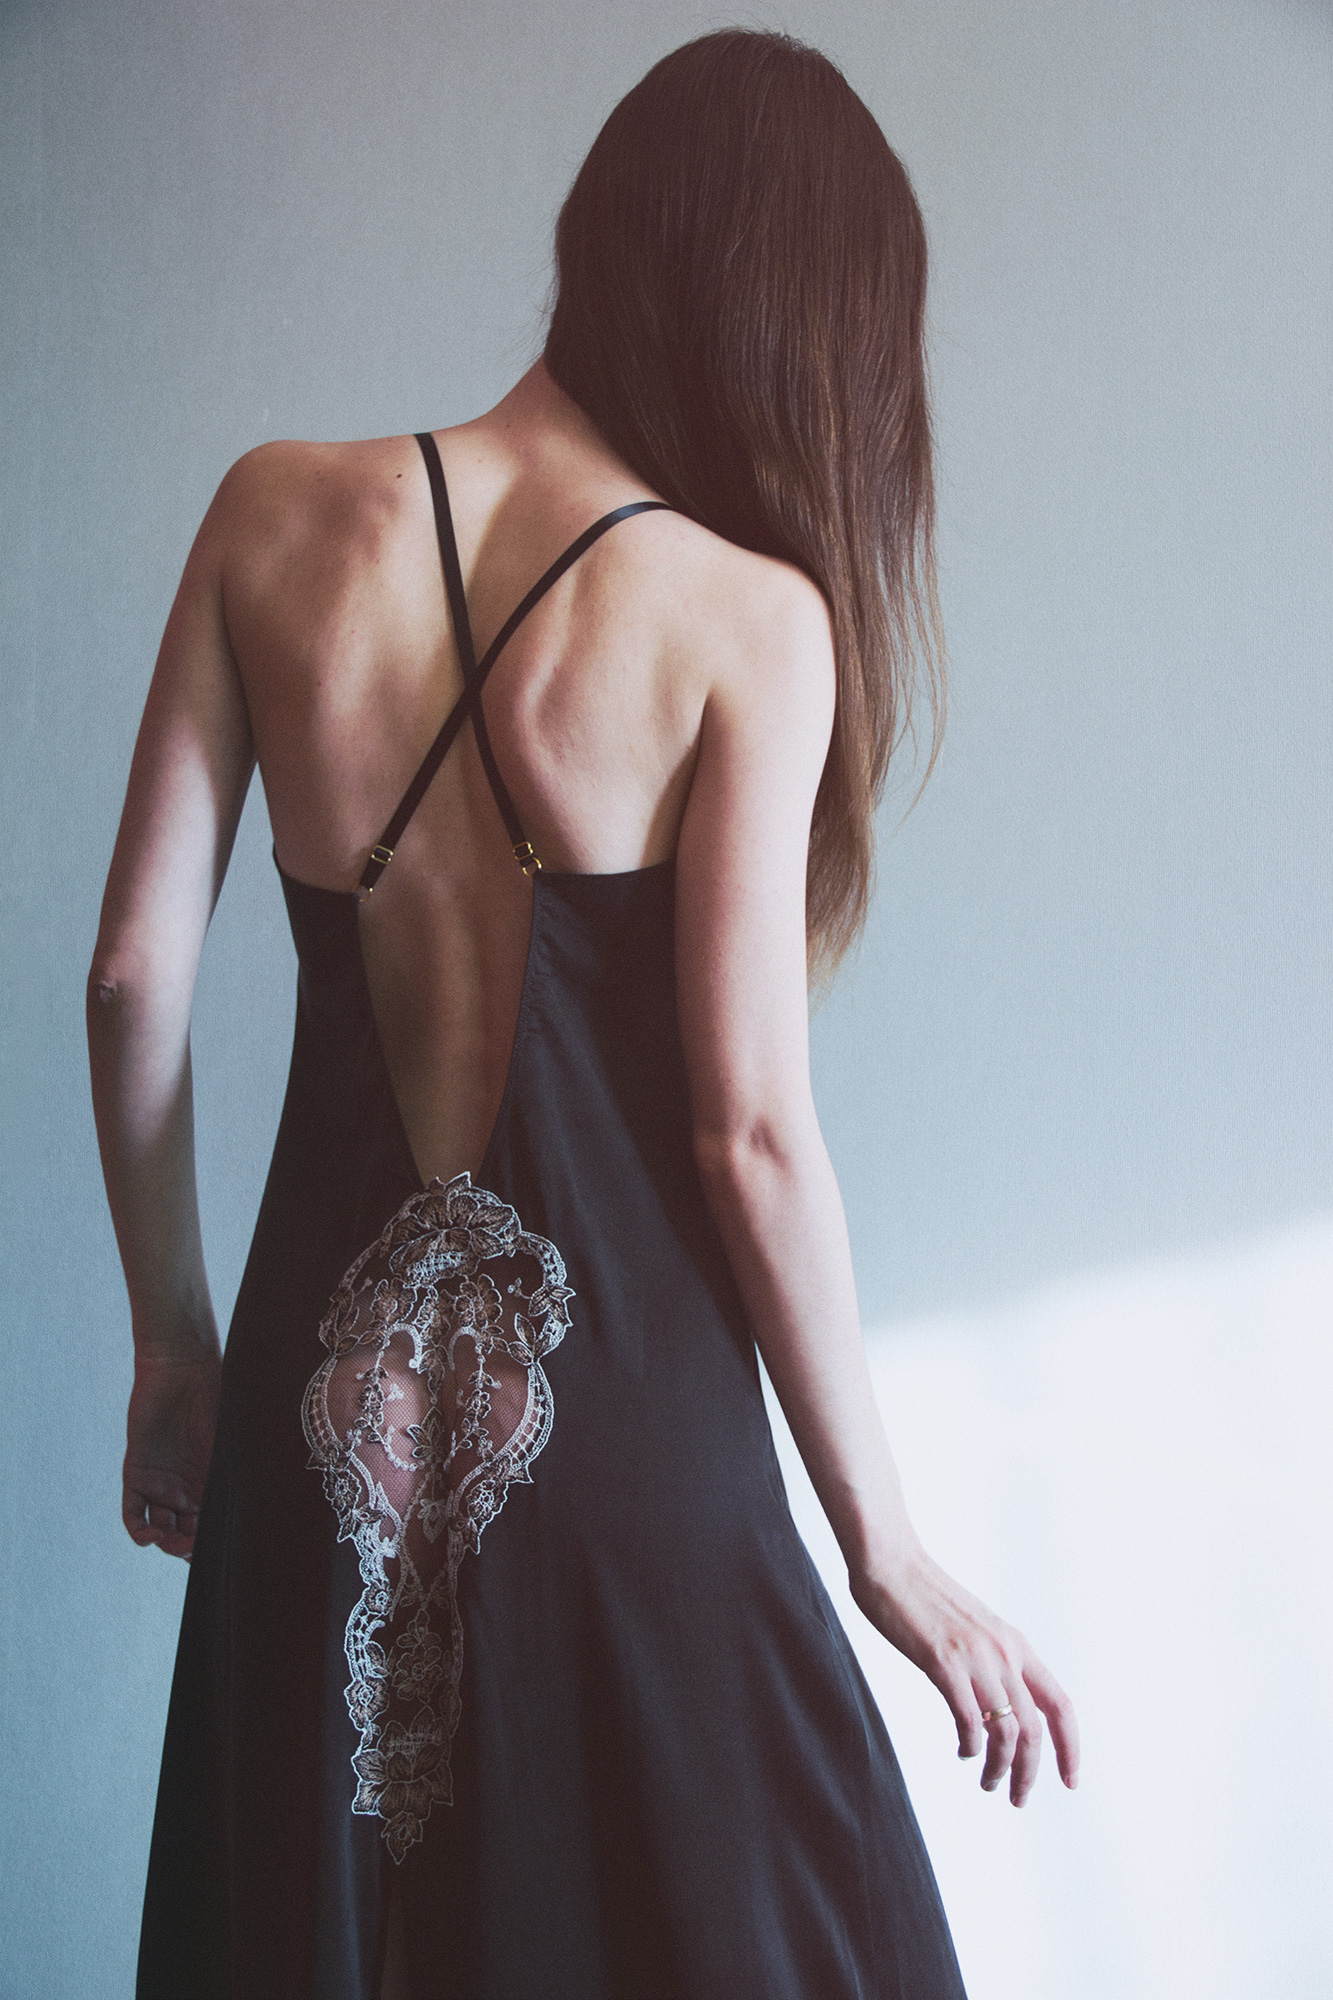 Фотообзор будуарного платья из мокрого шелка о Shell Belle Couture в журнале о нижнем белье и стиле GB {Garterblog.ru}